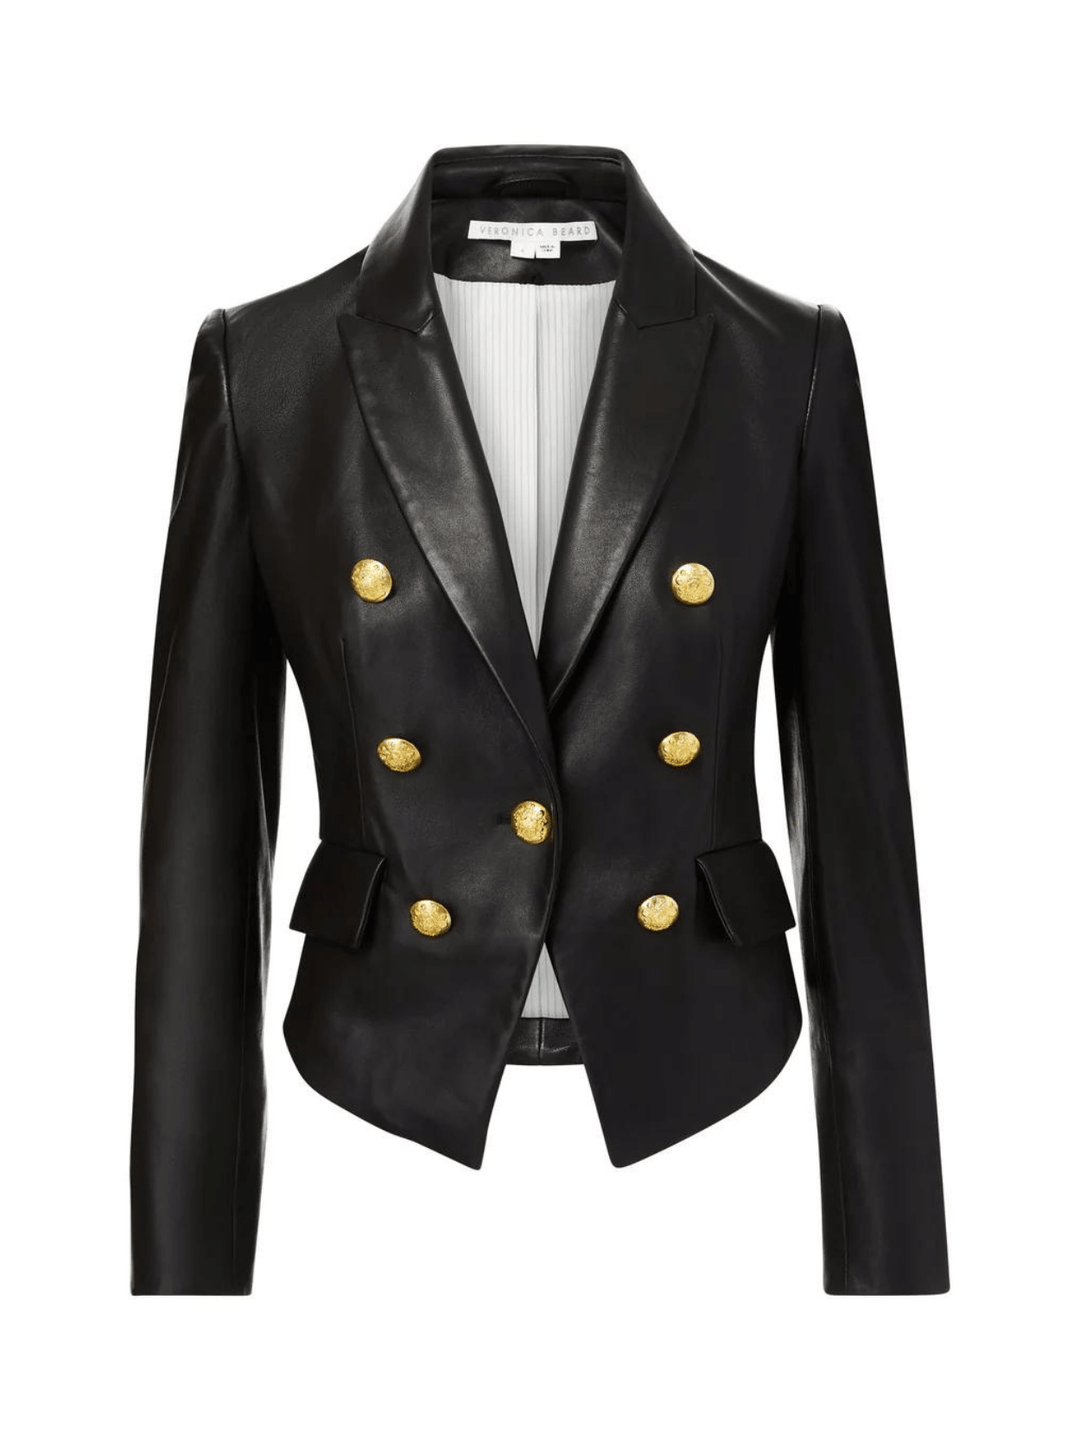 Eine luxuriöse schwarze Lederjacke von Veronica Beard, gekennzeichnet durch markante, gepolsterte Schultern, eine kurze Silhouette und das Markenzeichen der Marke: glänzende Metallwappenknöpfe.